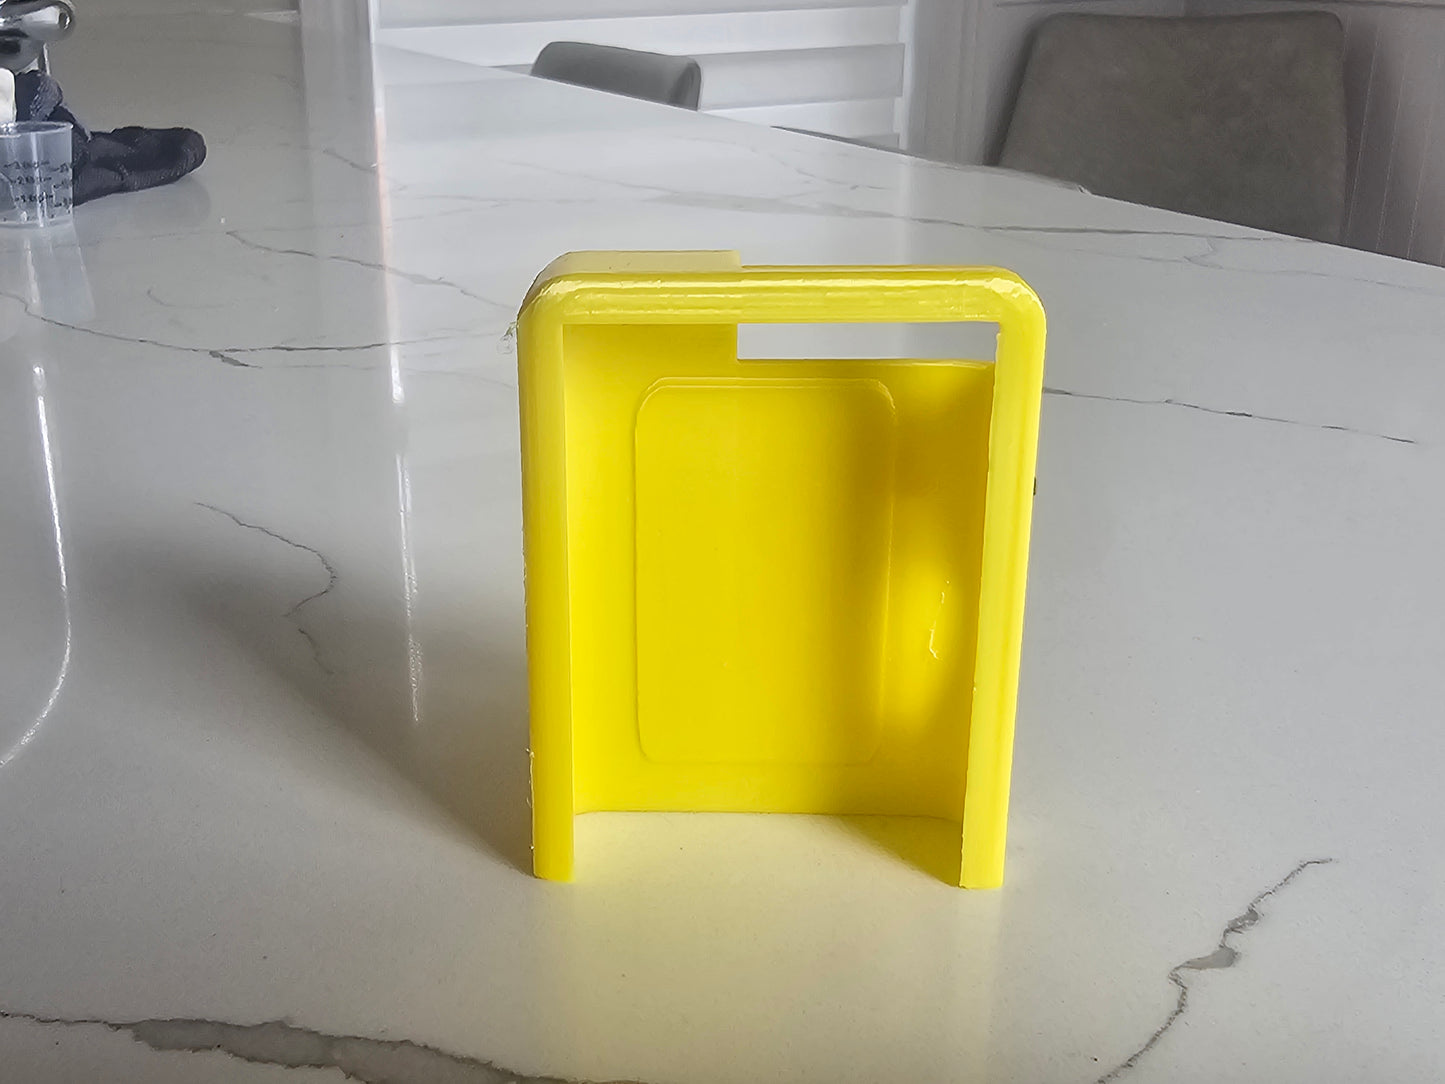 Pikachu  - tslim x2 pump case